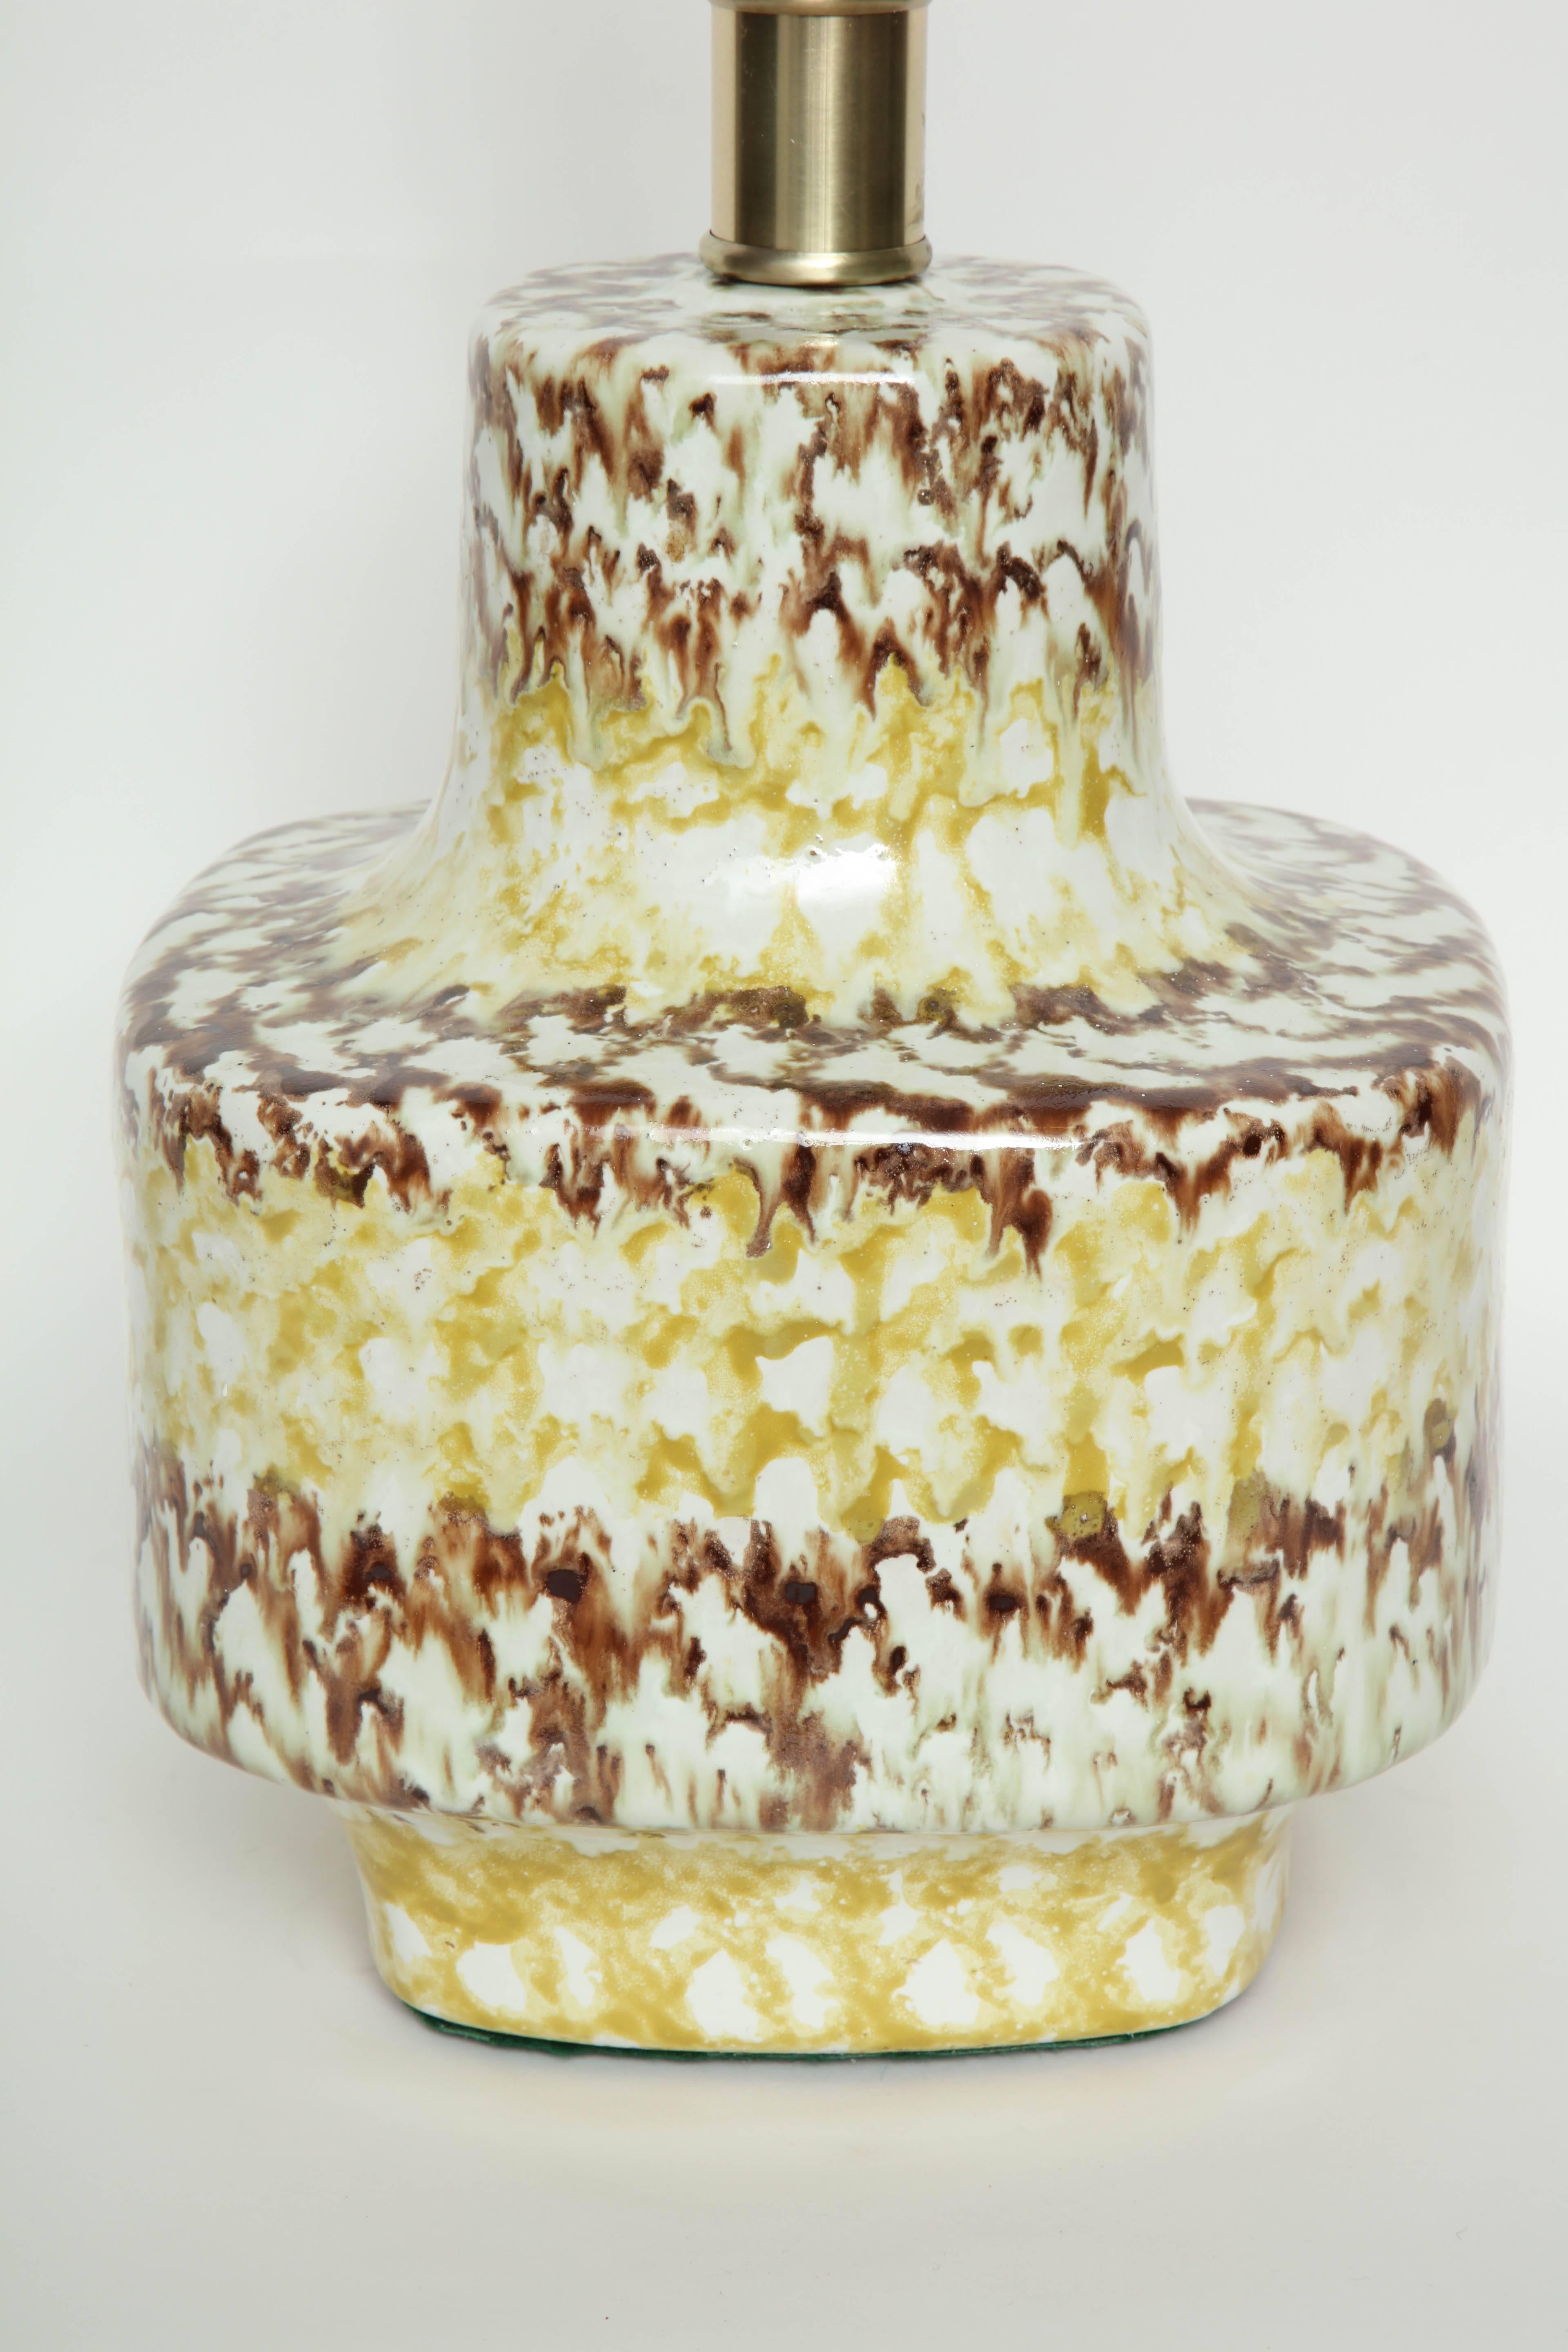 Paire de lampes modernistes ouest-allemandes en céramique de forme carrée, présentant une glaçure jaune et brune tachetée sur un fond blanc crème. Recâblé pour une utilisation aux USA, ampoule 100W max.